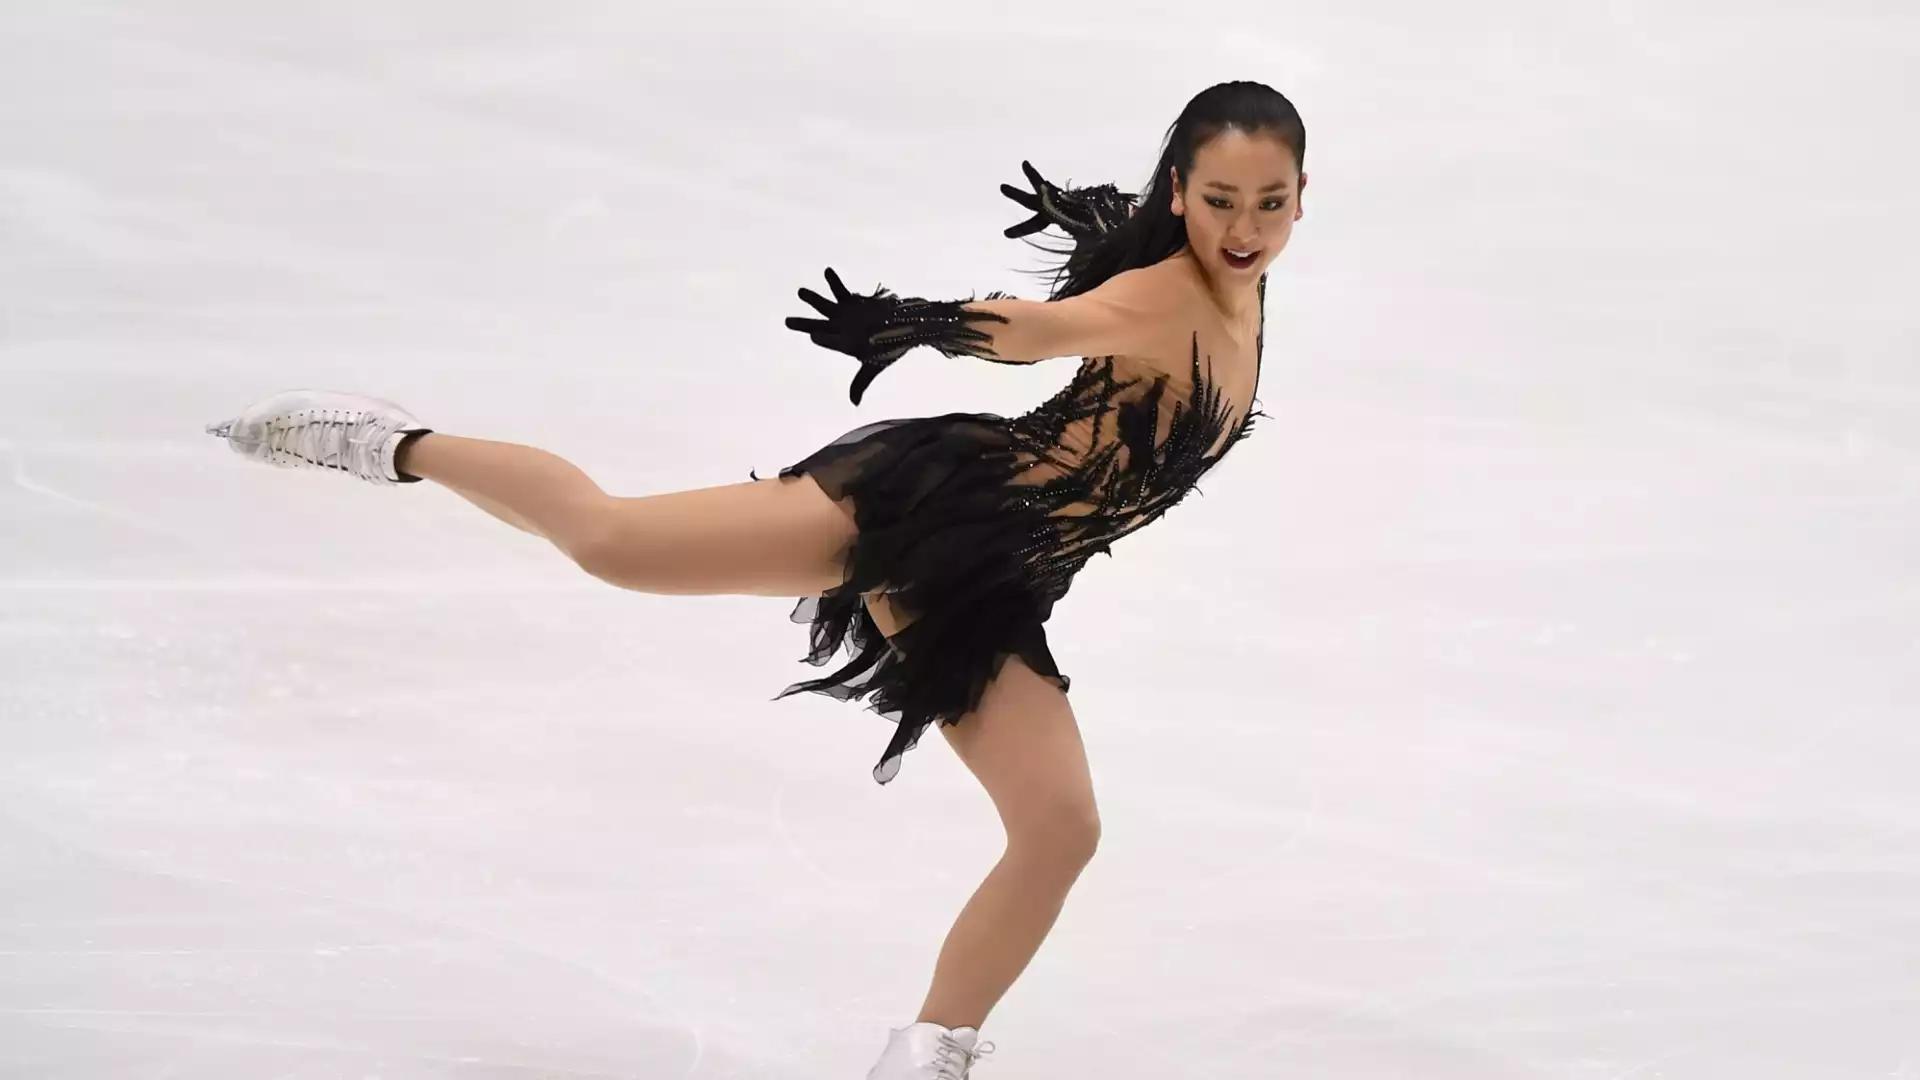 Asada Mao (Pattinaggio di figura): nata il 25 settembre 1990. Medaglia d'argento alle Olimpiadi di Vancouver, tre volte campionessa del mondo